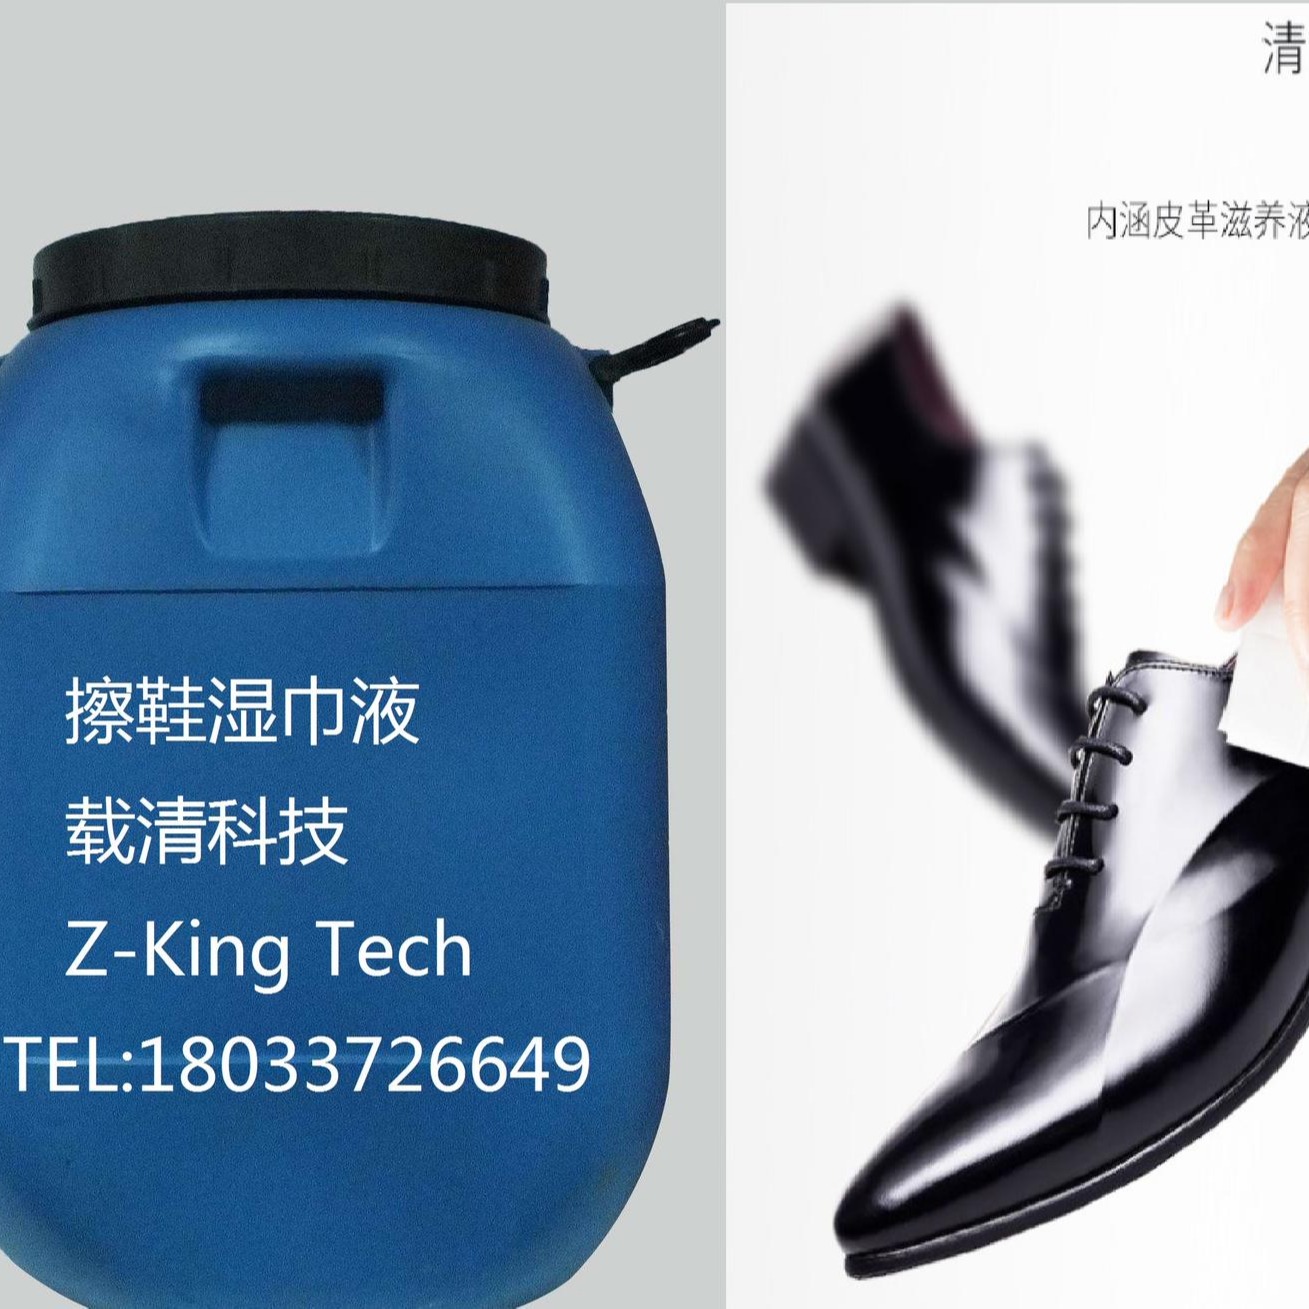 擦鞋湿巾液，27元/kg，1开4使用，载清，ZK801图片